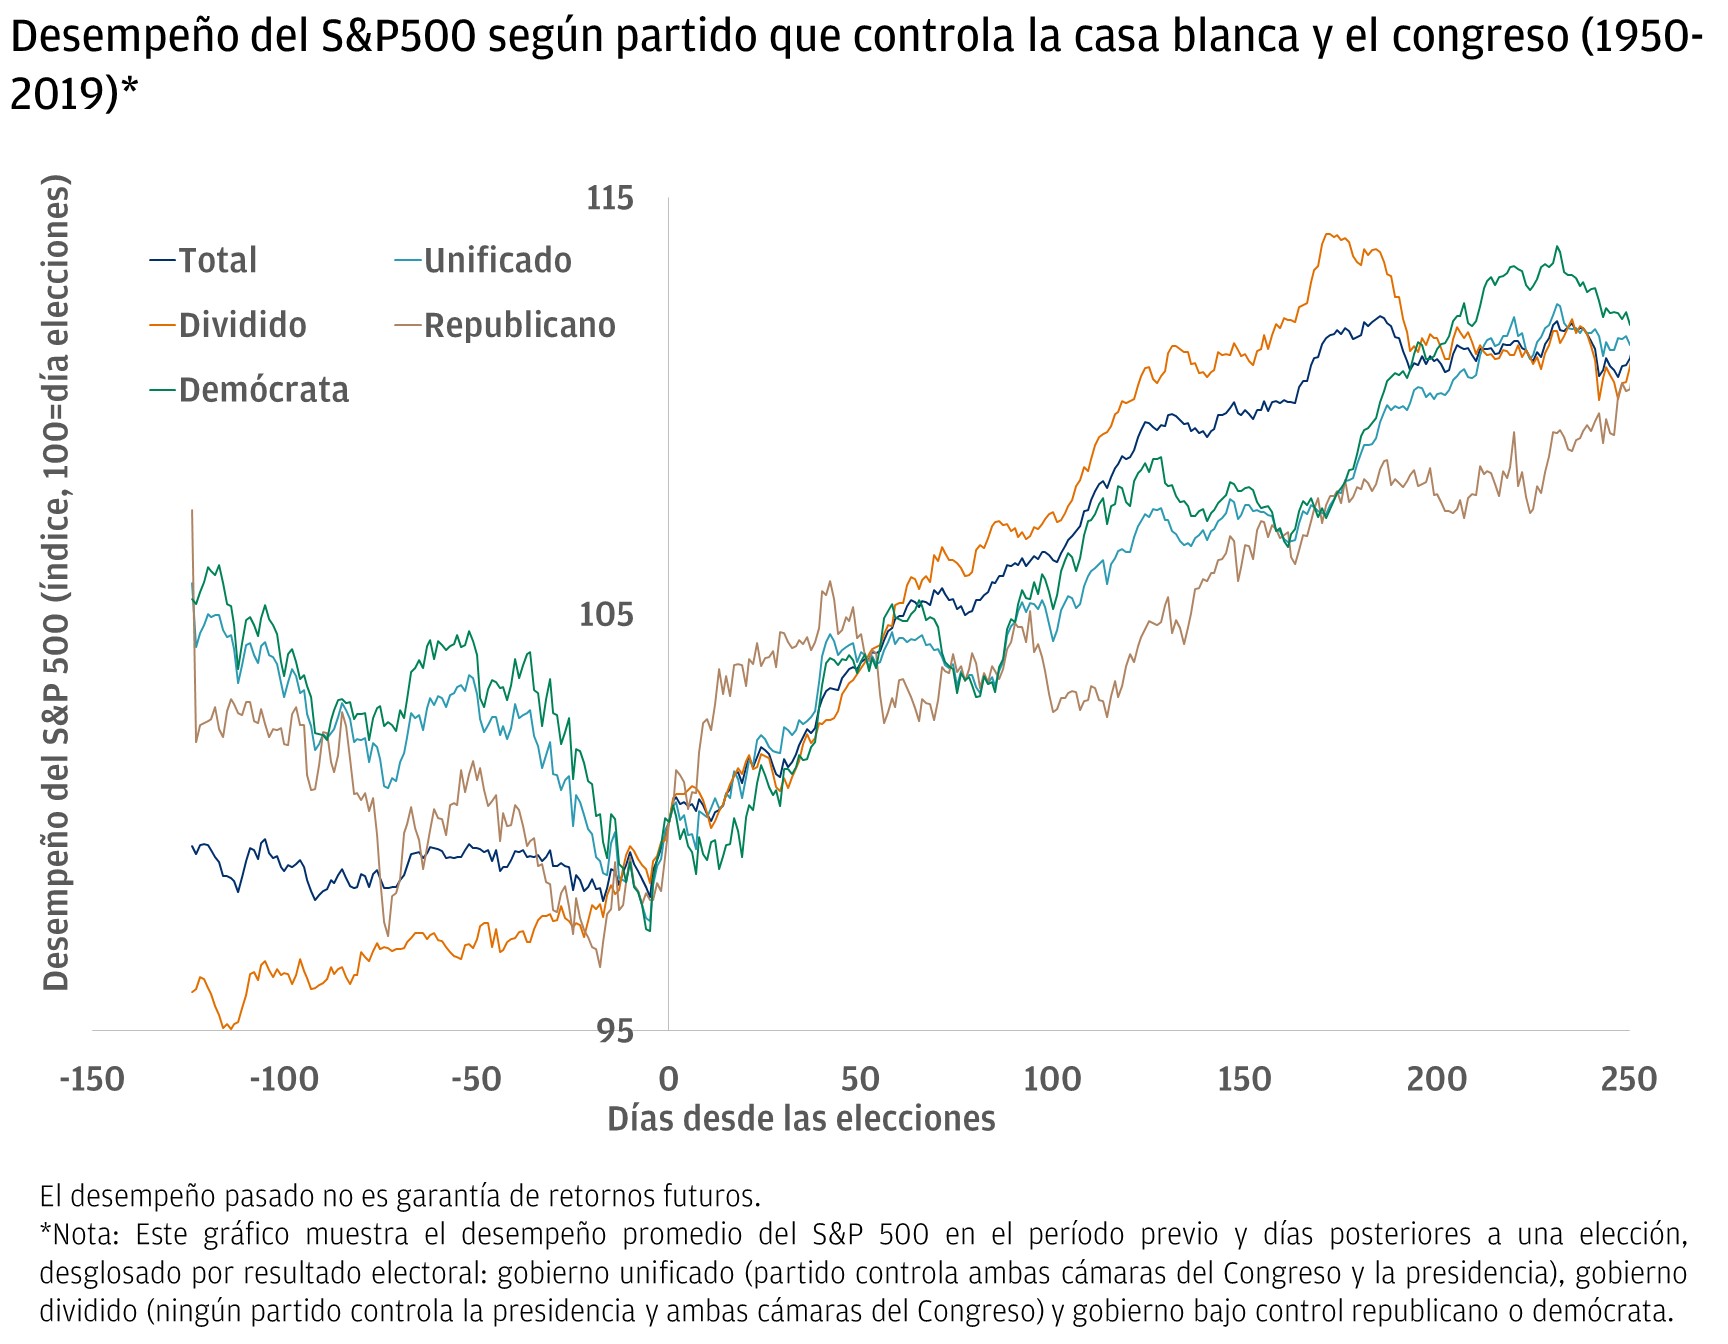 Desempeño del mercado según partido que controla la casa blanca + congreso (1950-2019)